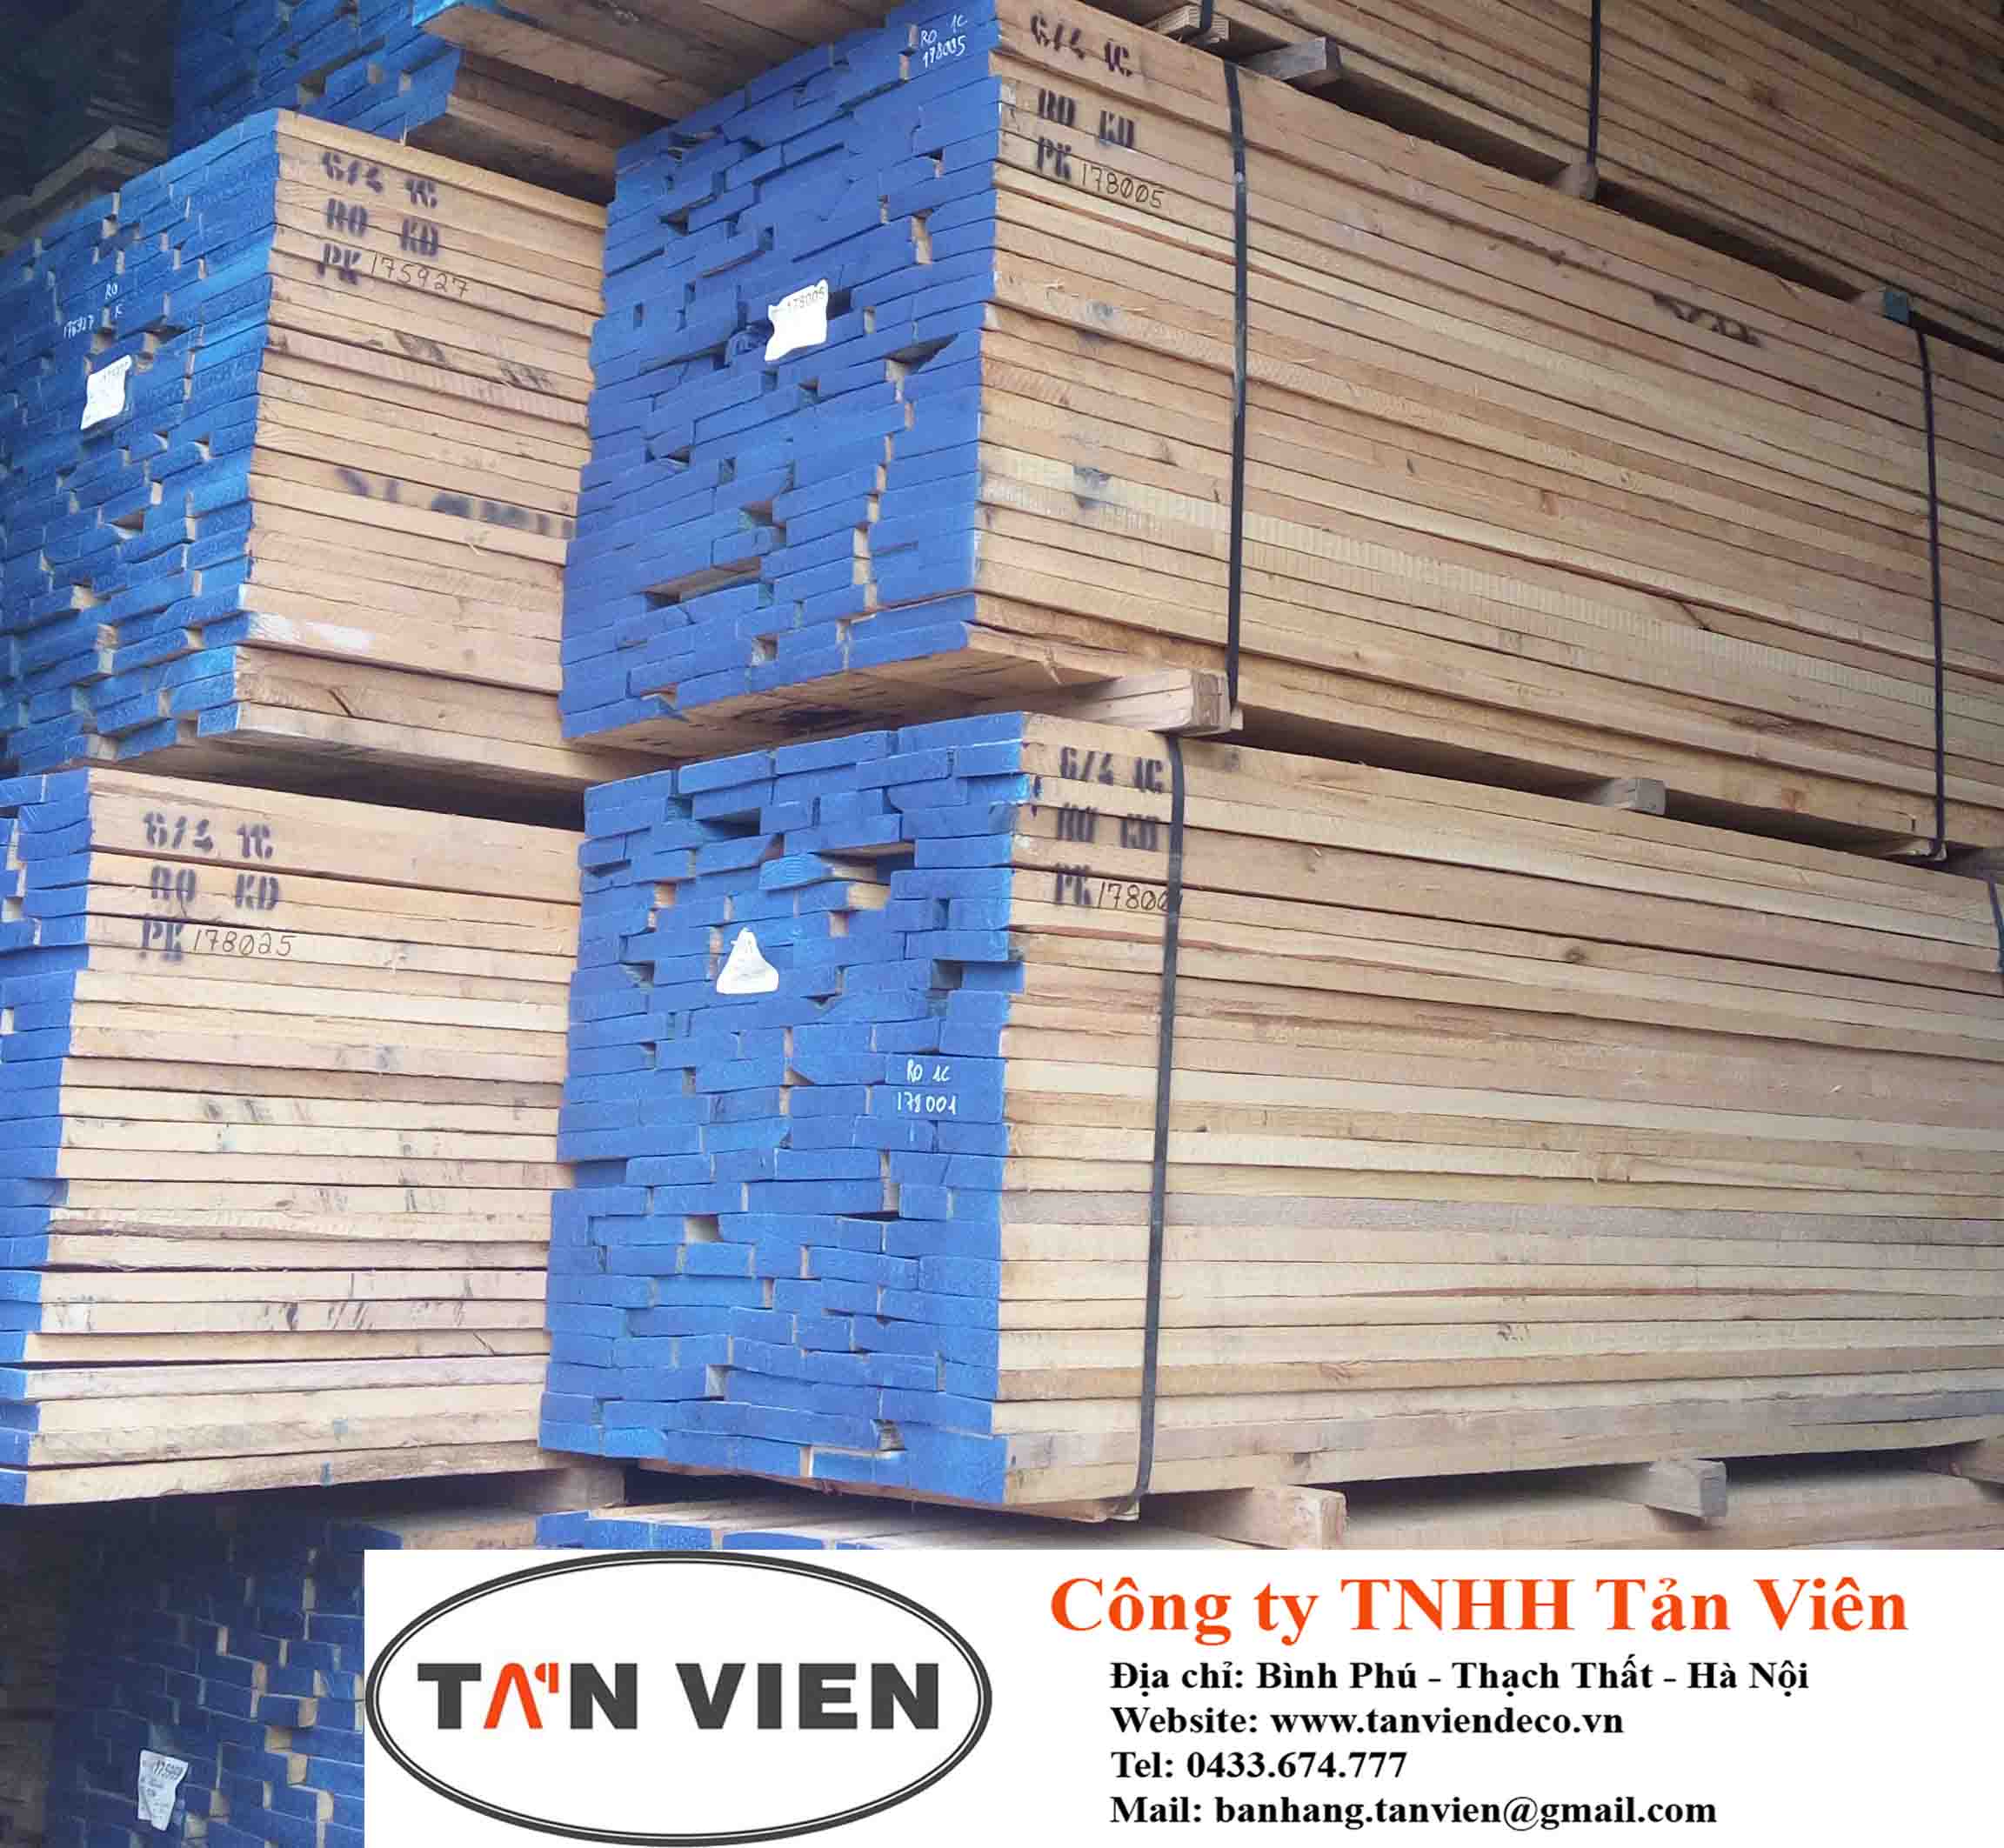 Vẻ đẹp sang trọng và đẳng cấp của gỗ sồi đỏ sẽ khiến bạn say mê khi vừa nhìn thấy. Với chất lượng tuyệt vời, gỗ sồi đỏ ngày càng thu hút được nhiều người sử dụng và được xem là một loại vật liệu quý hiếm ở Việt Nam.